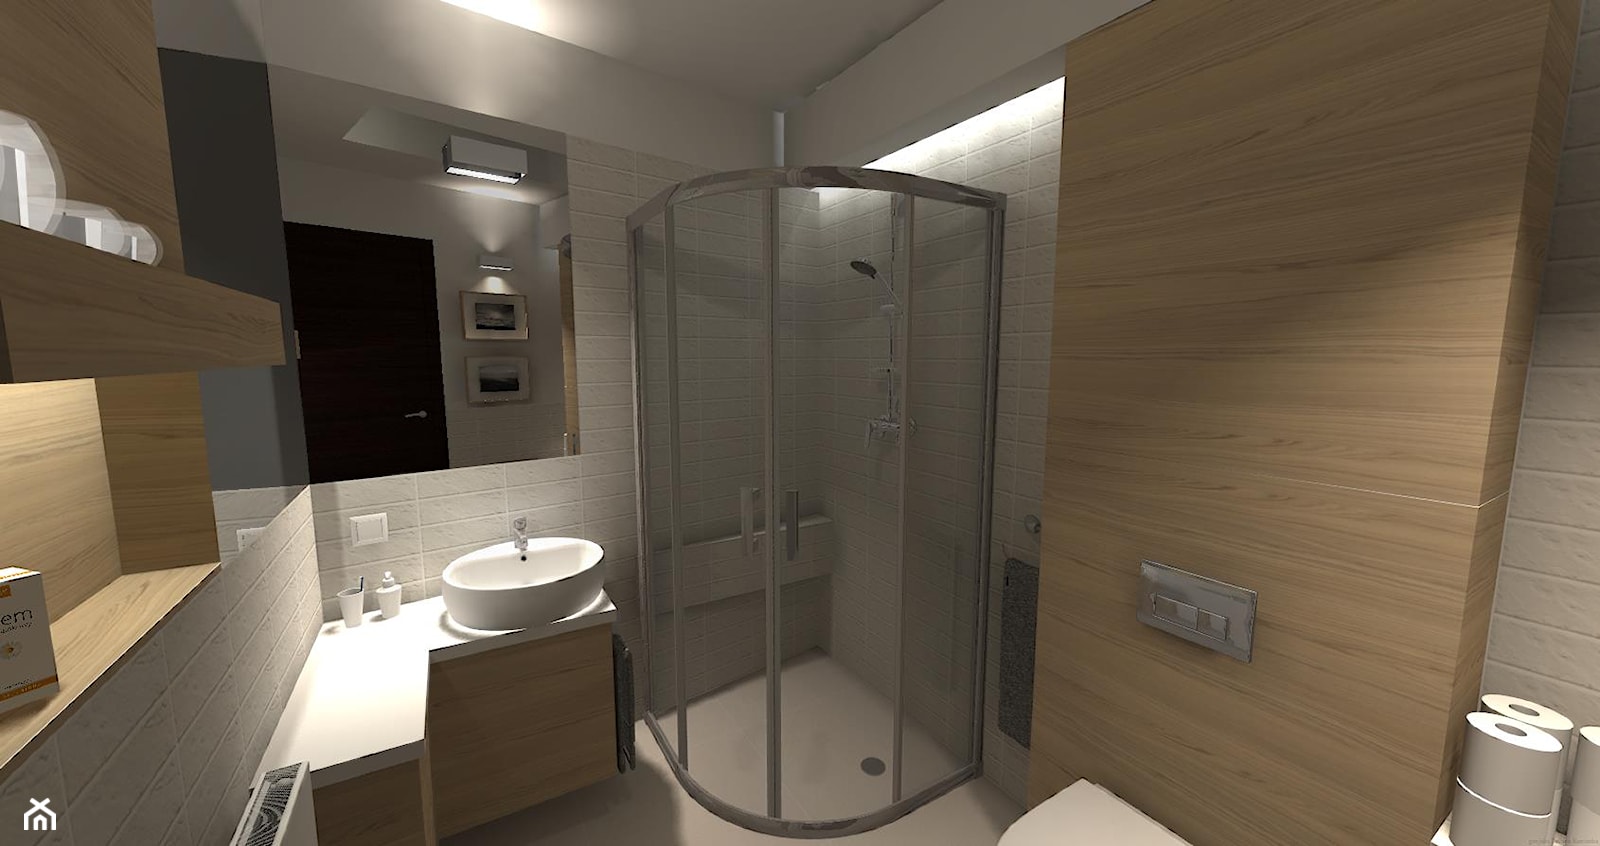 kabina prysznicowa i umywalka - zdjęcie od domolka.pl - Homebook